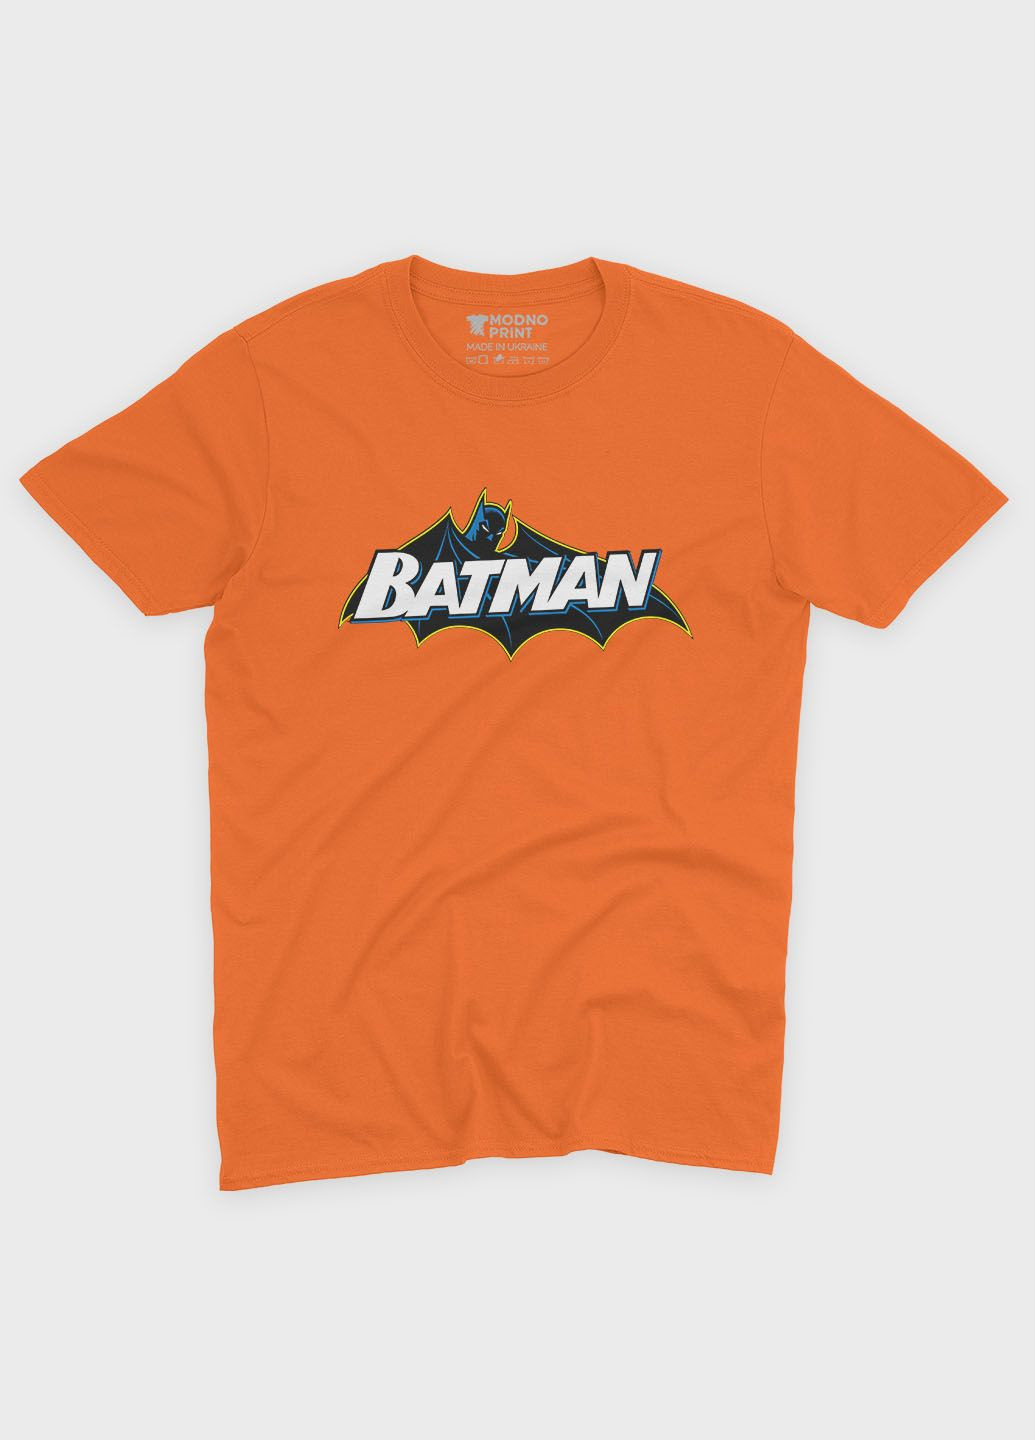 Оранжевая демисезонная футболка для мальчика с принтом супергероя - бэтмен (ts001-1-ora-006-003-021-b) Modno